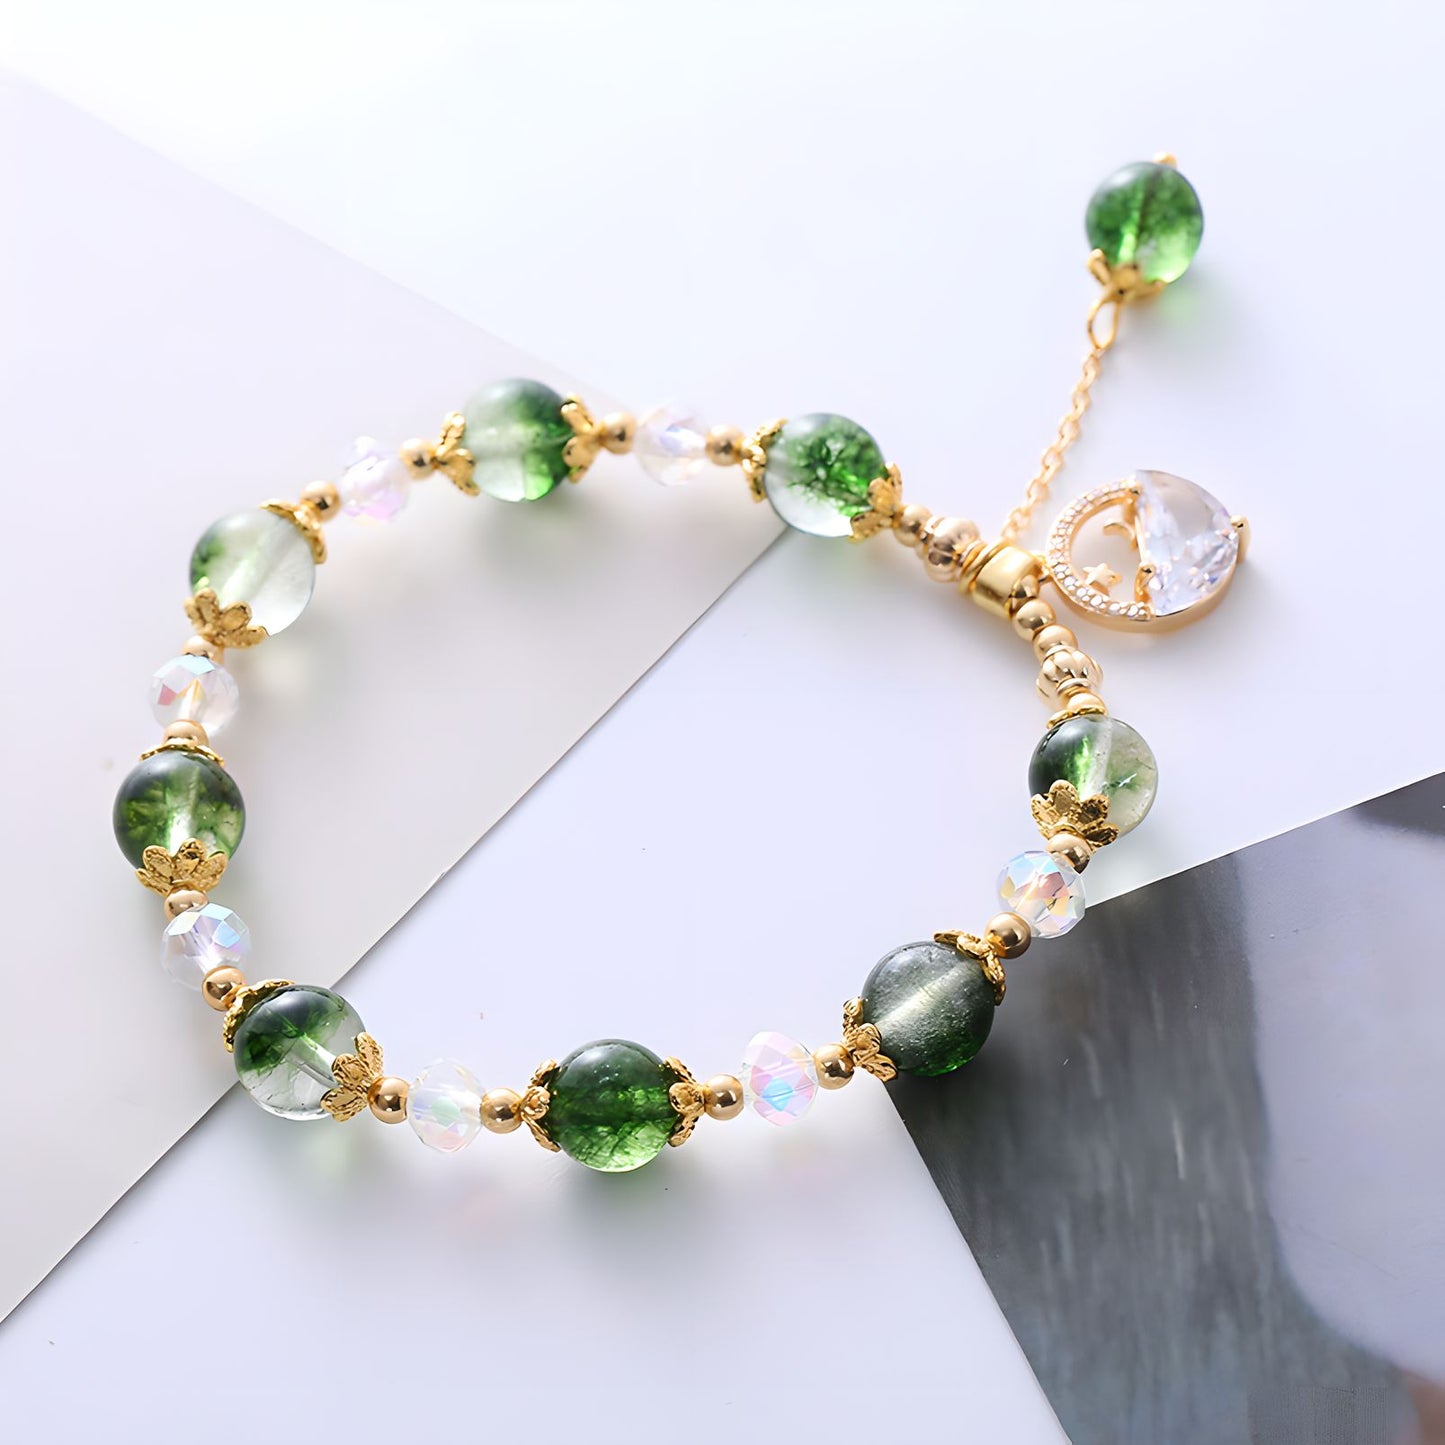 Luxyin Rachel Green Phantom Quartz Crystal Bead Bracelet